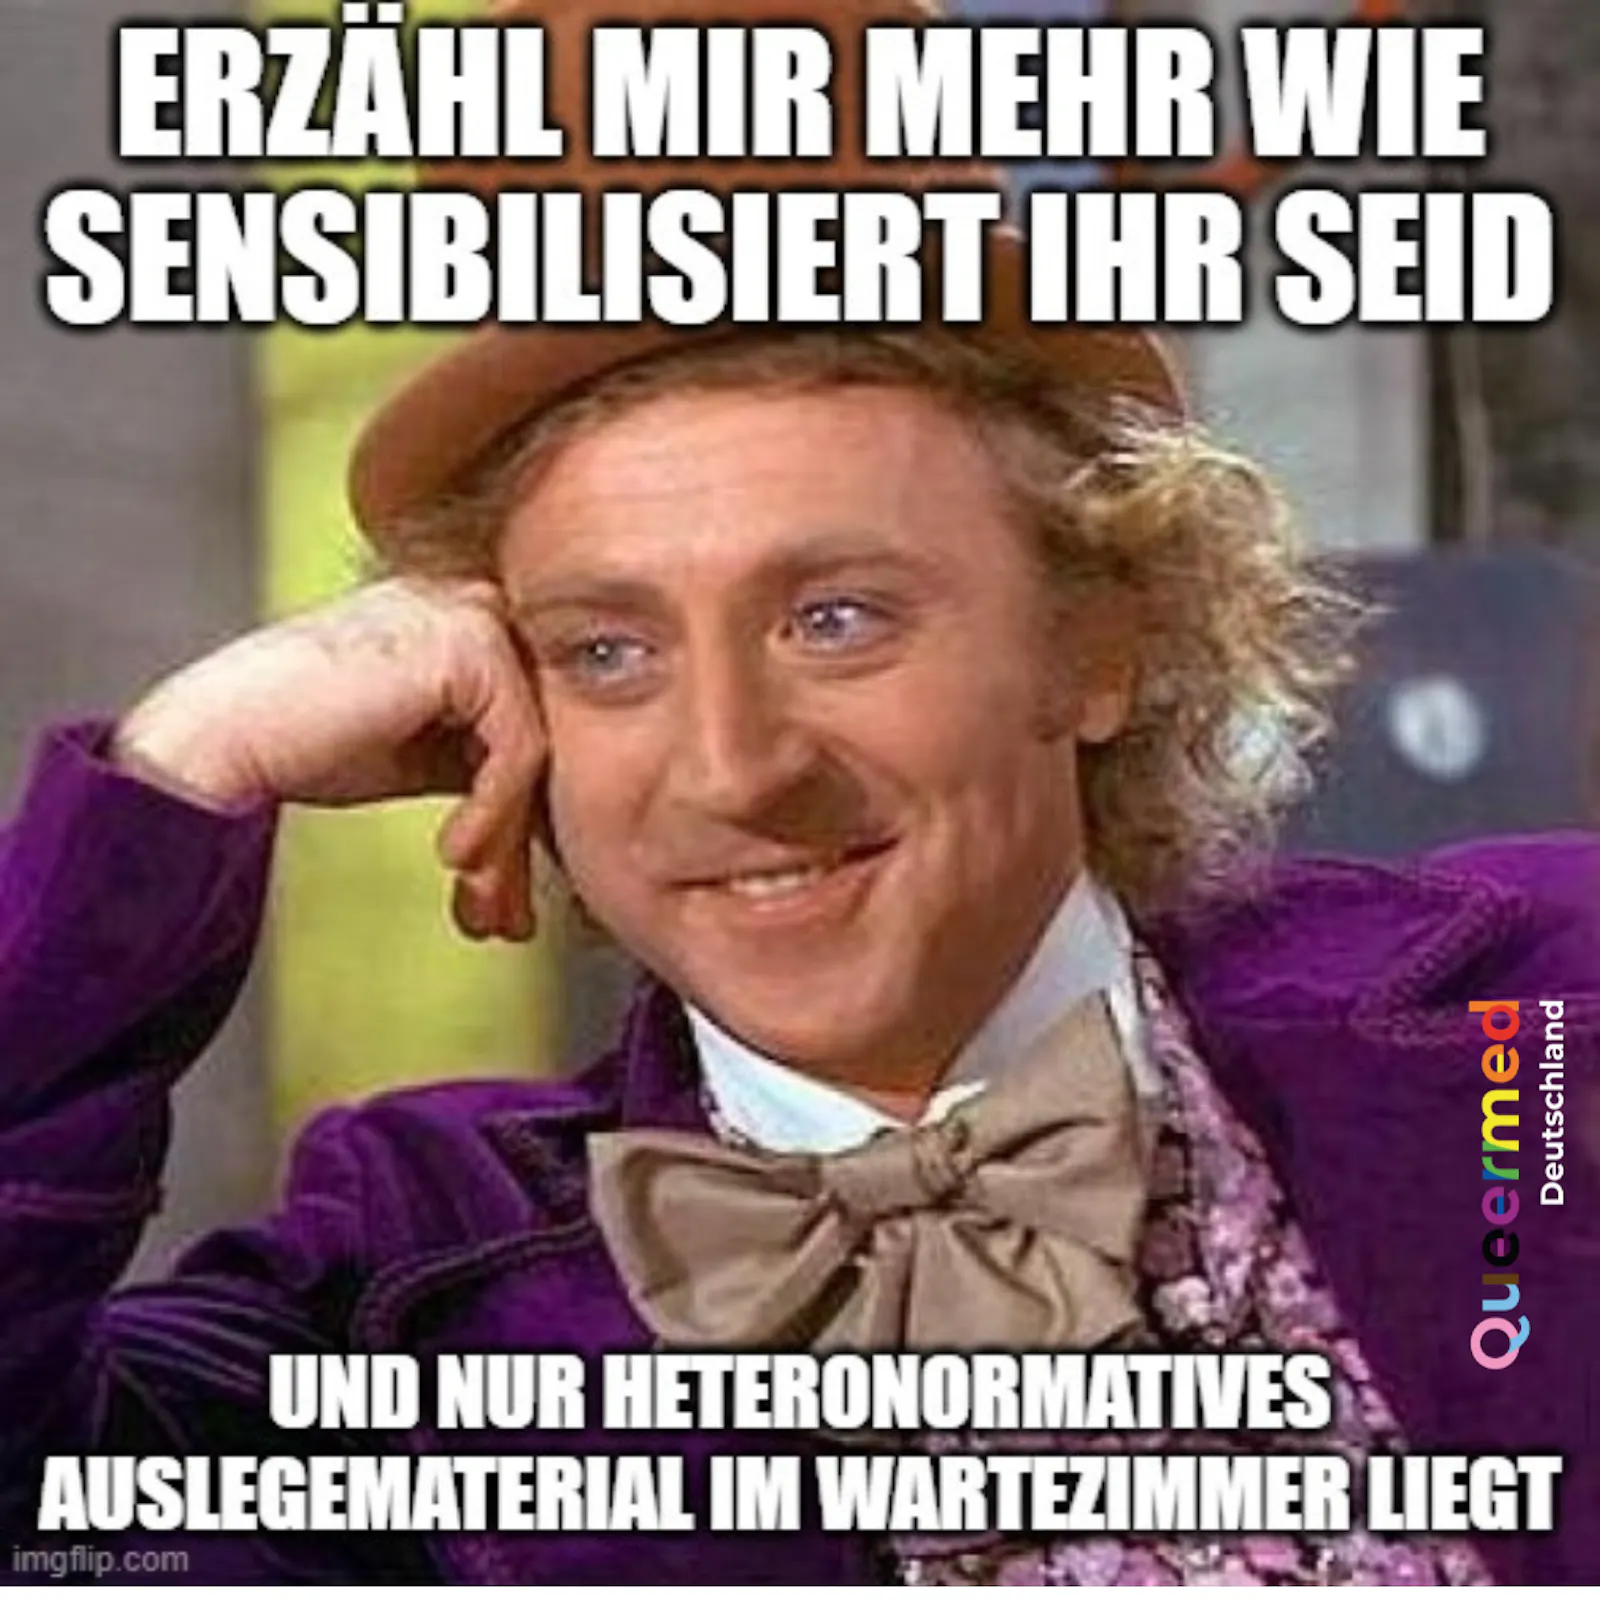 Willy Wonka Meme mit den Worten "Erzähl mir mehr wie sensibilisiert ihr seid und nur heteronormatives auslegematerial im wartezimmer liegt"